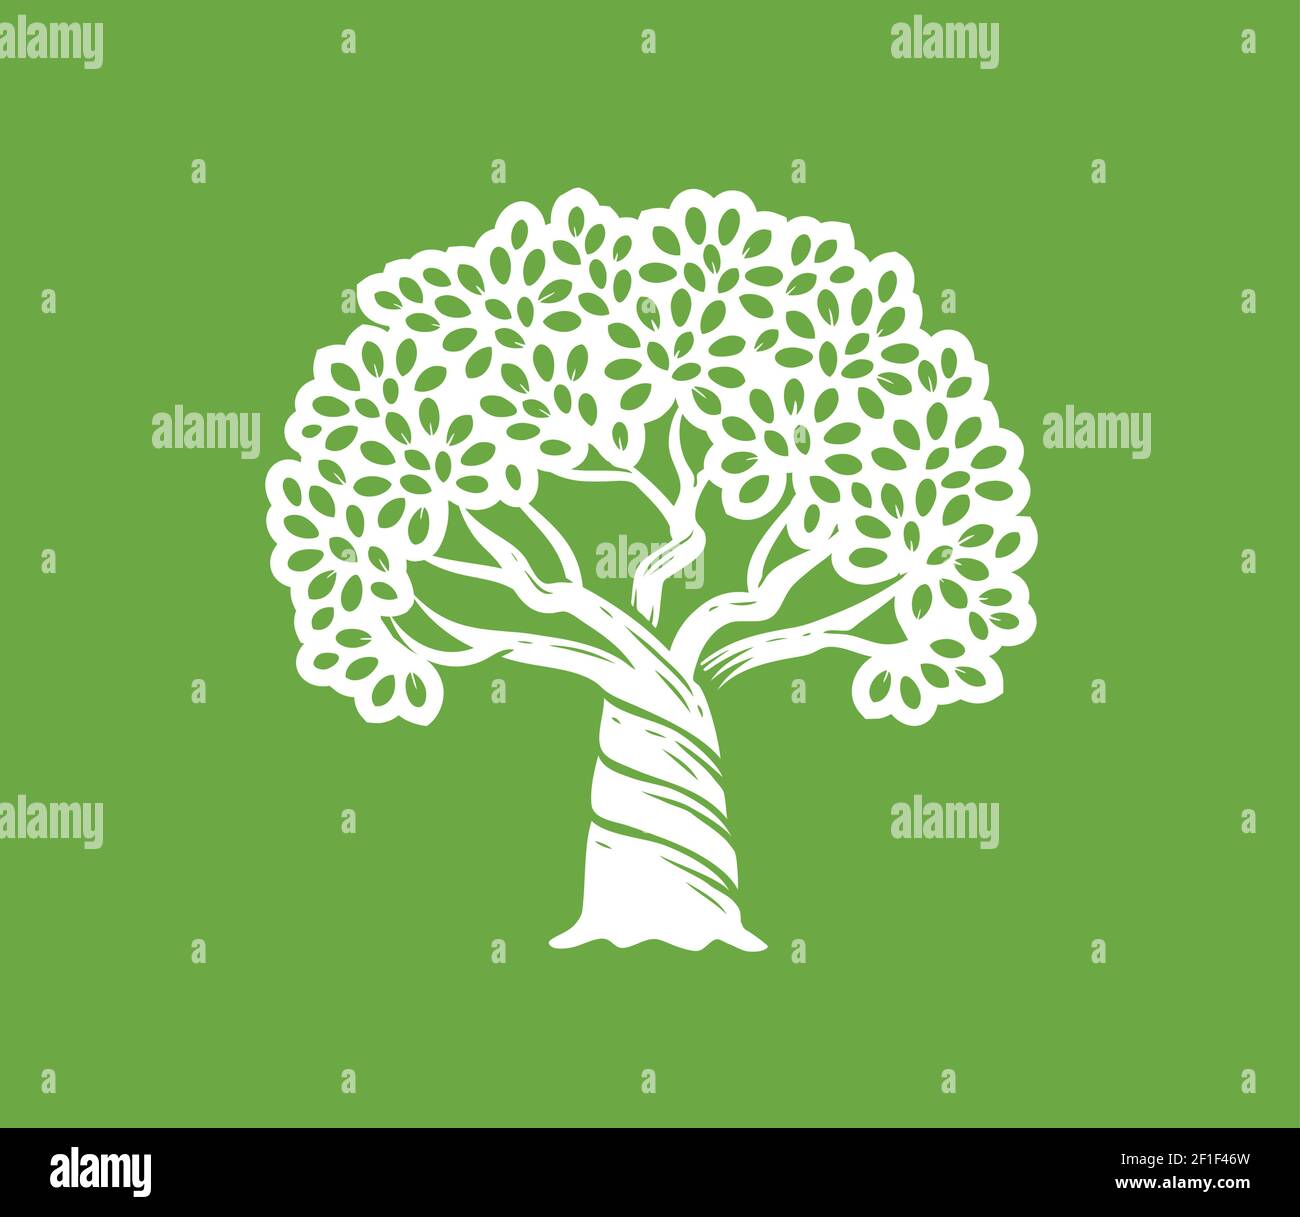 Wachsender großer Baum mit Blättern Symbol. Vektorgrafik Naturkonzept Stock Vektor